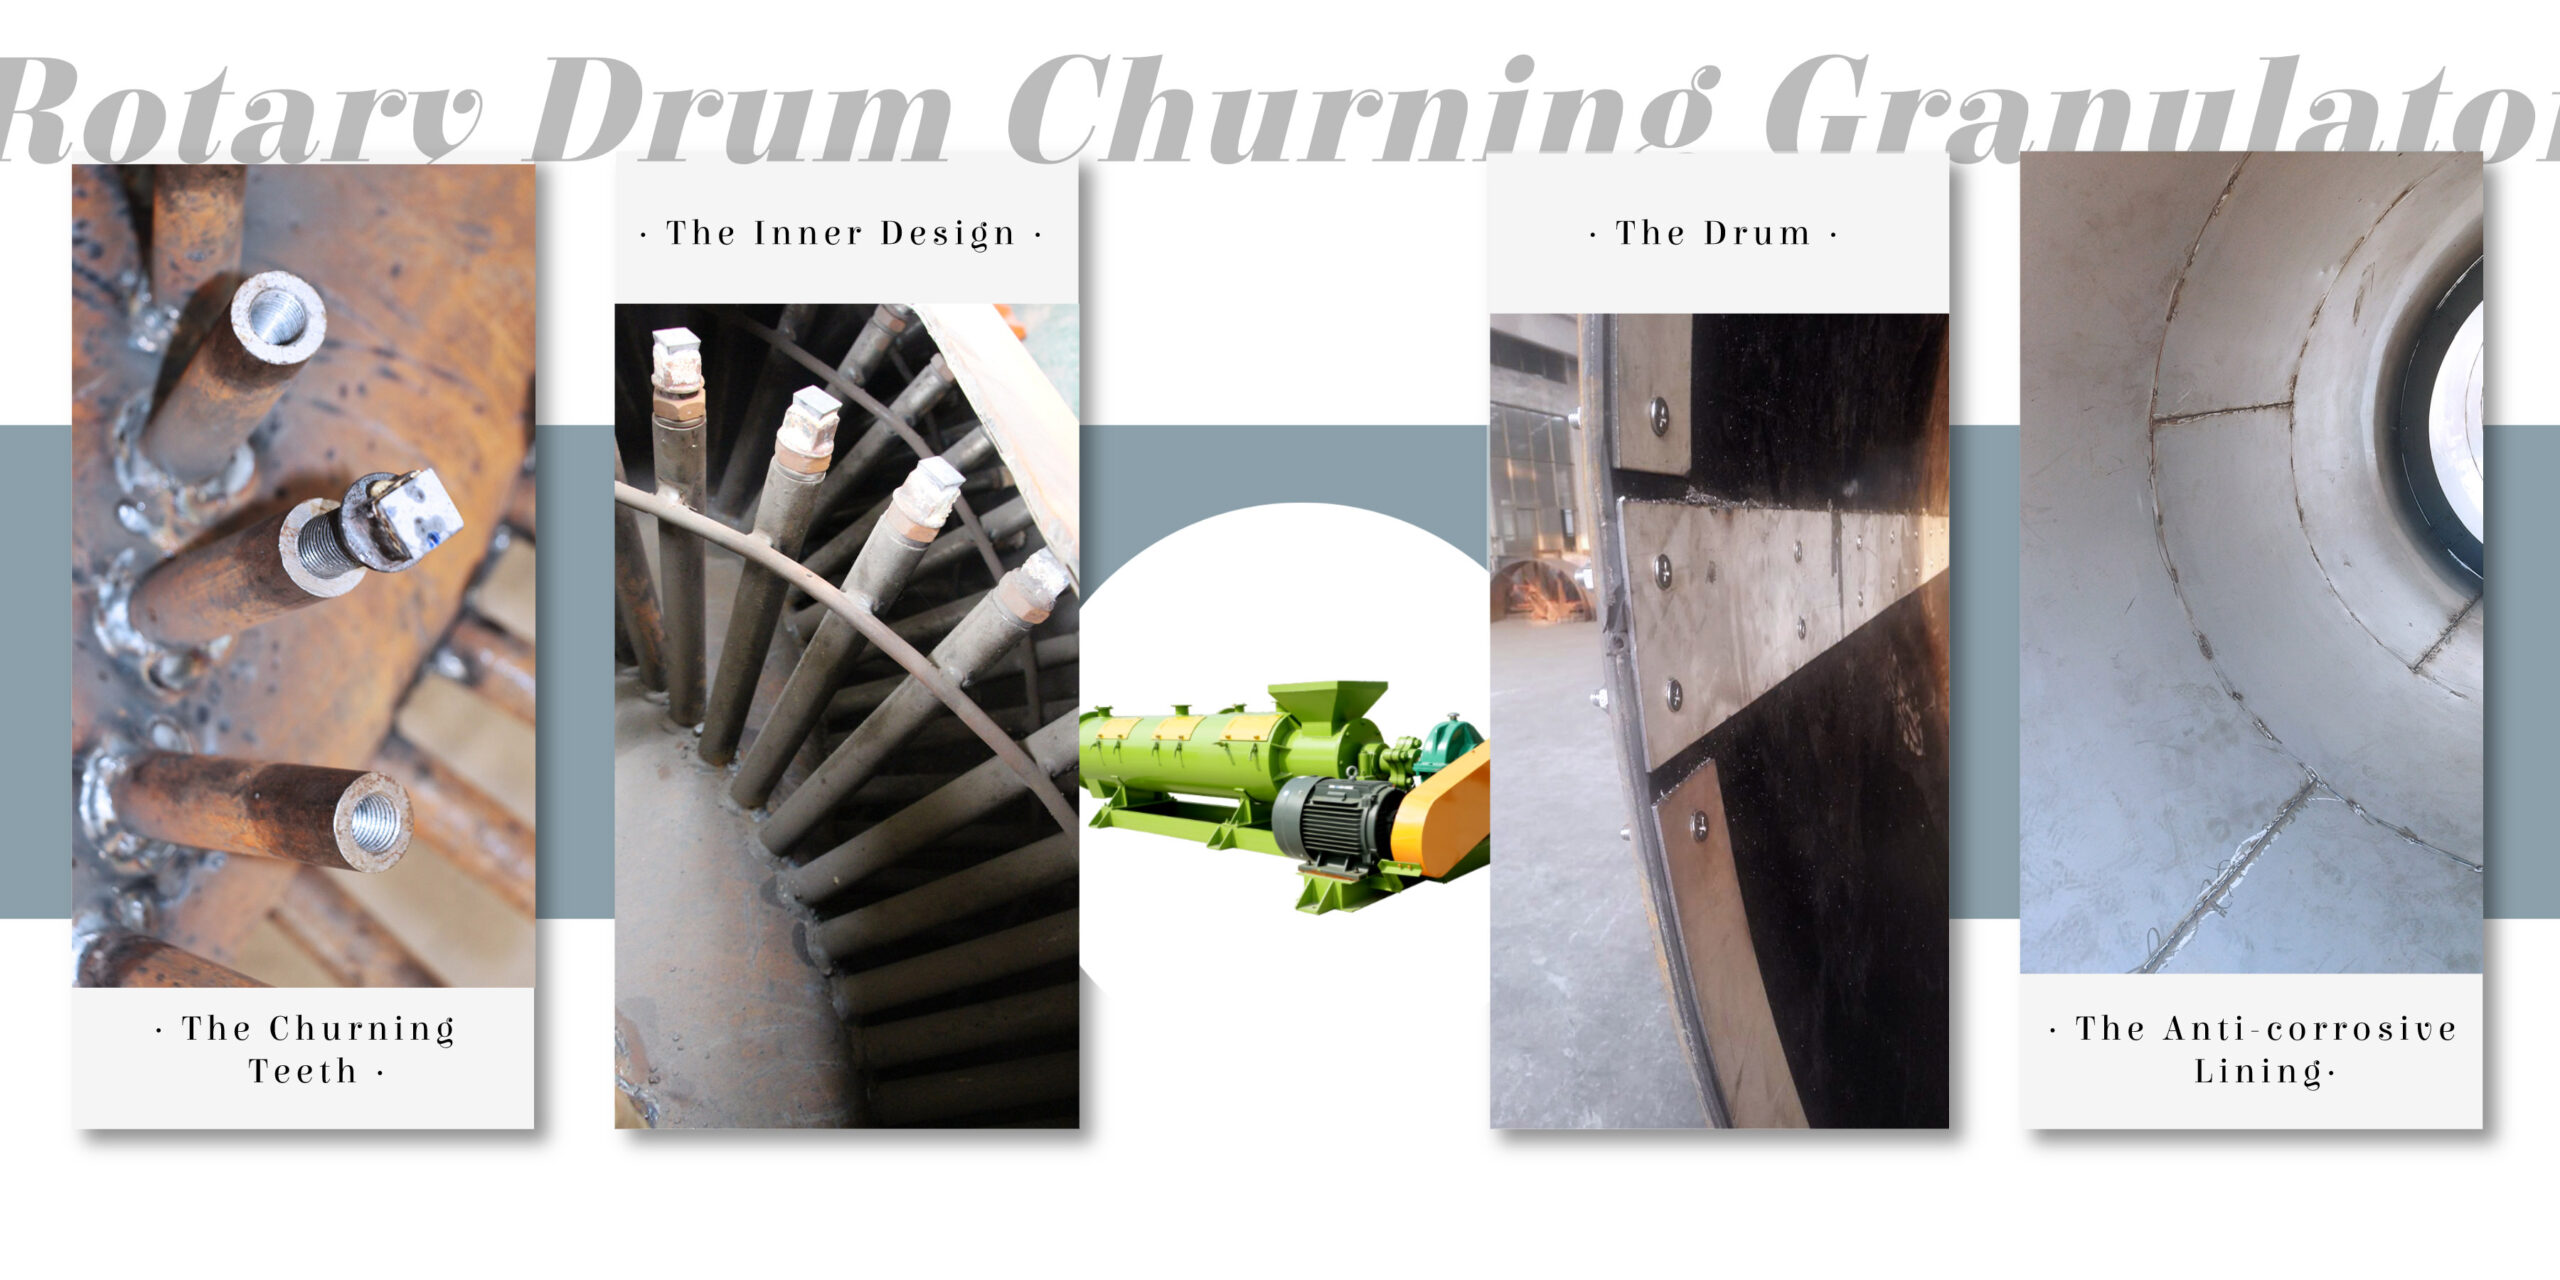 The Details of ROtary Drum Churning Granulating Machine